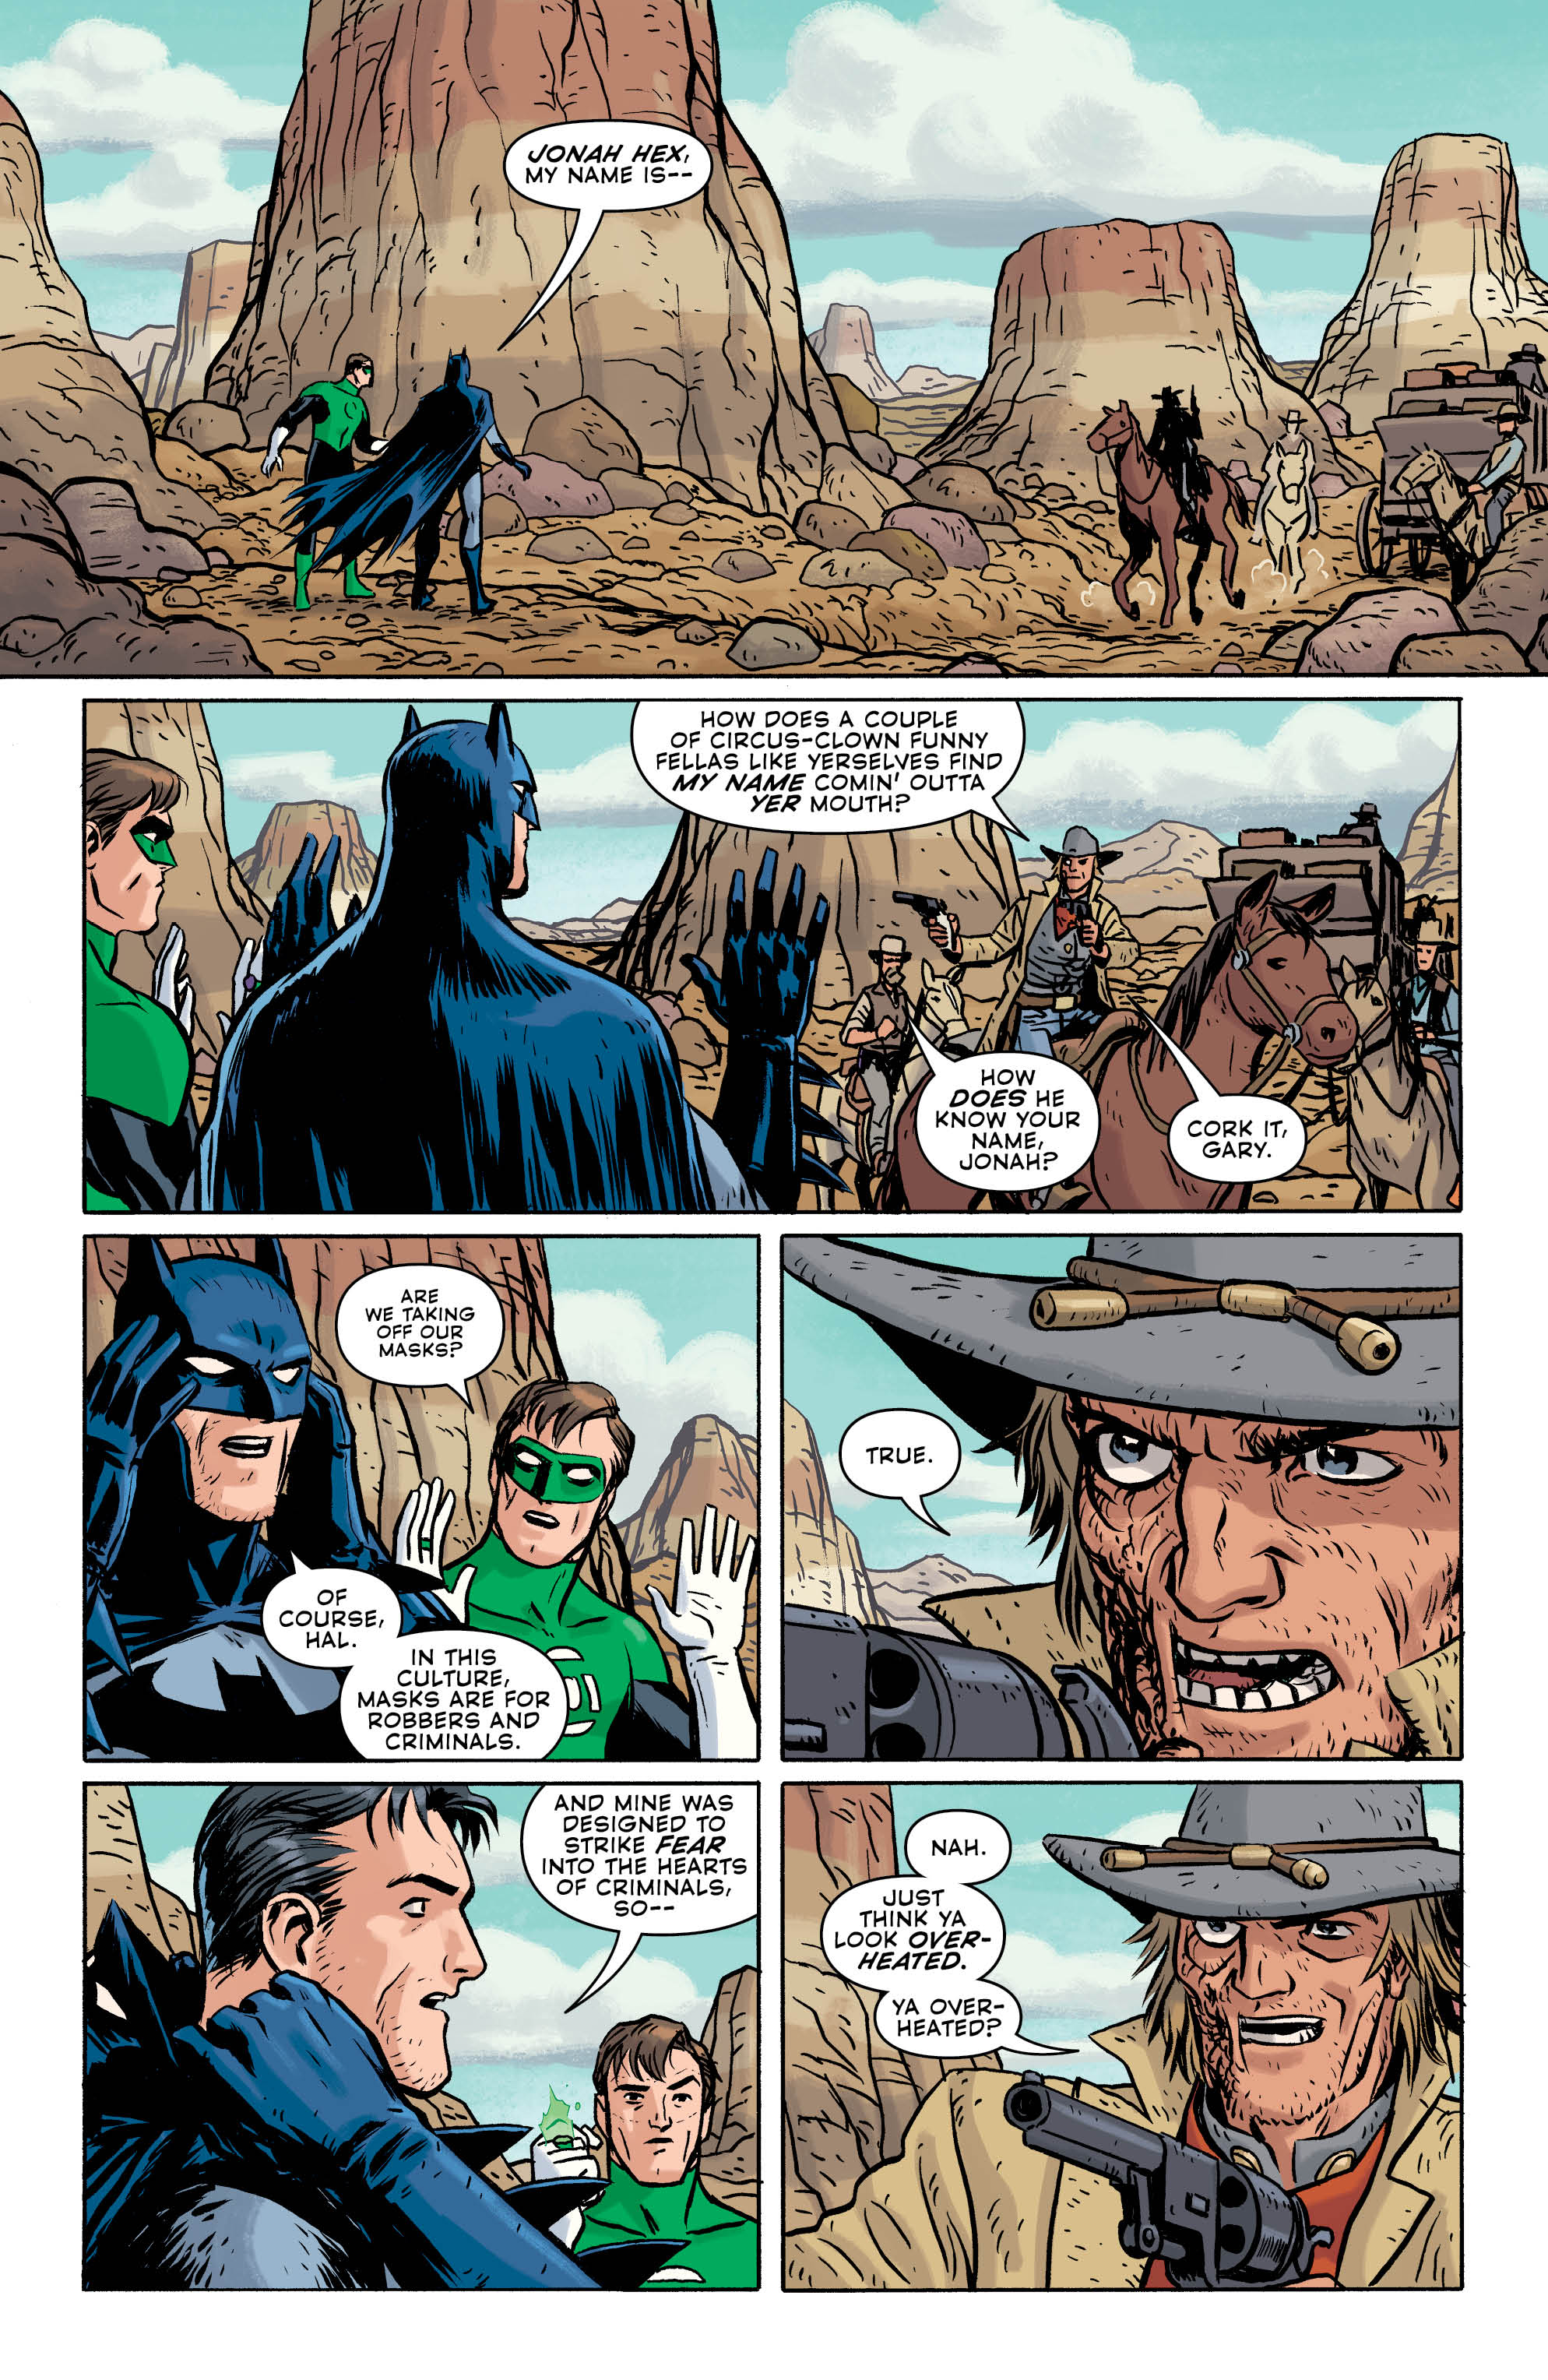 DC, 2019 8540 VF/NM Batman Universe #4 